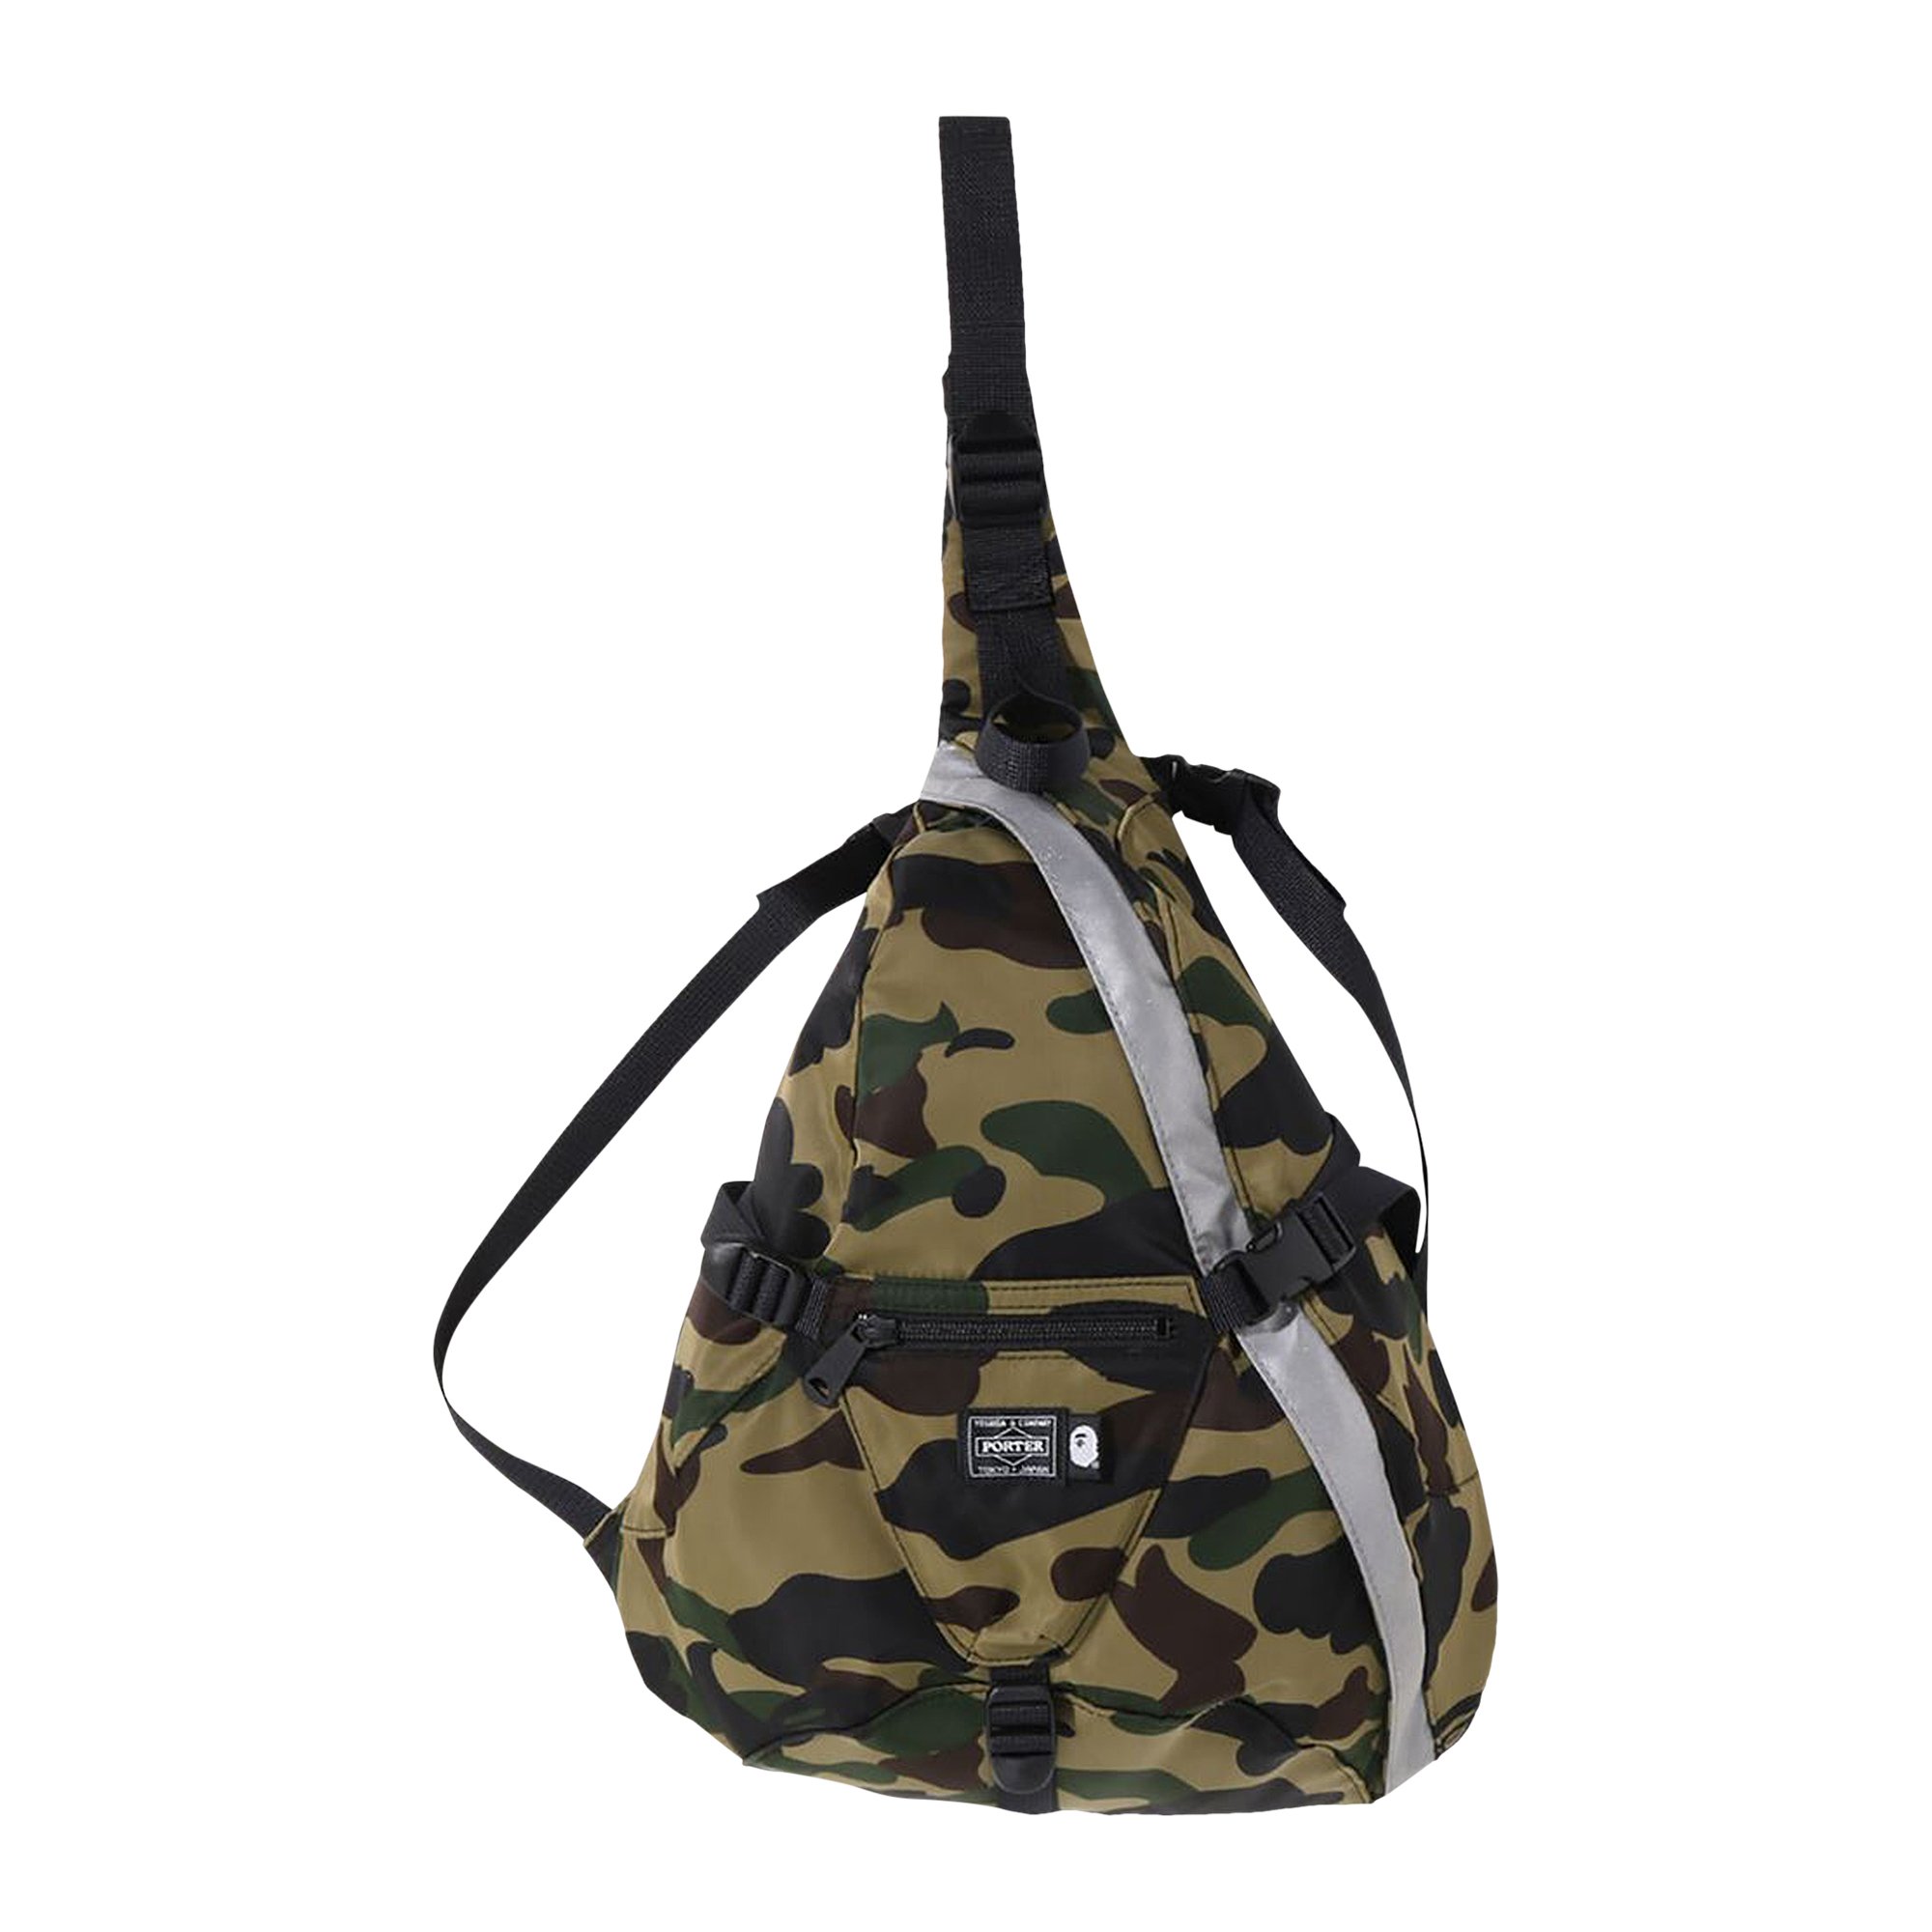 Buy BAPE x Porter 1st Camo One Shoulder Bag 'Green' - 1I33 189 928